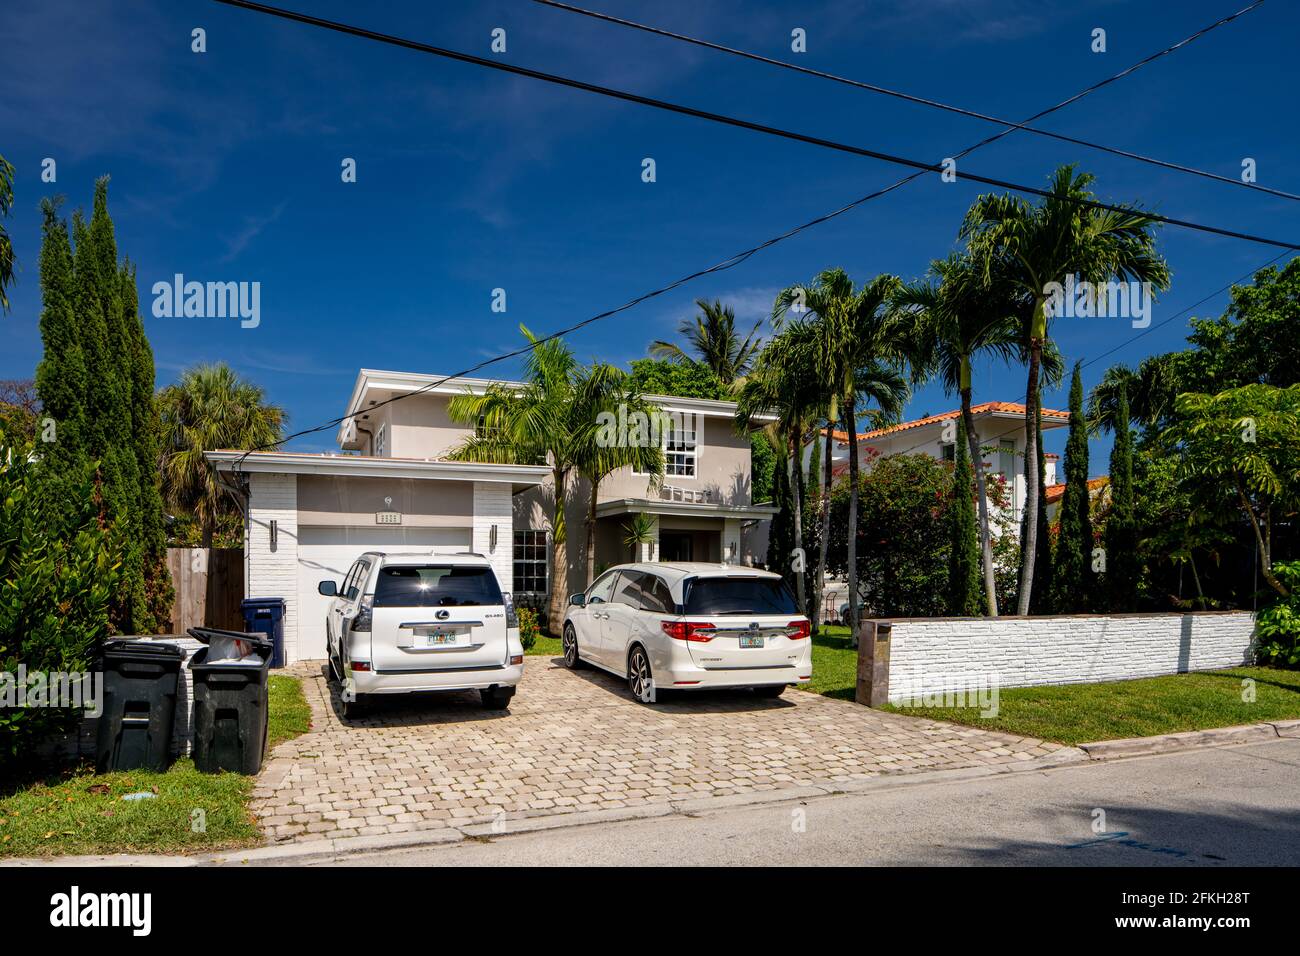 Surfside Miami, FL, USA - 1 mai 2021: Série de photos de maisons unifamiliales à Surfside qui est une subdivision de Miami Dade County Banque D'Images